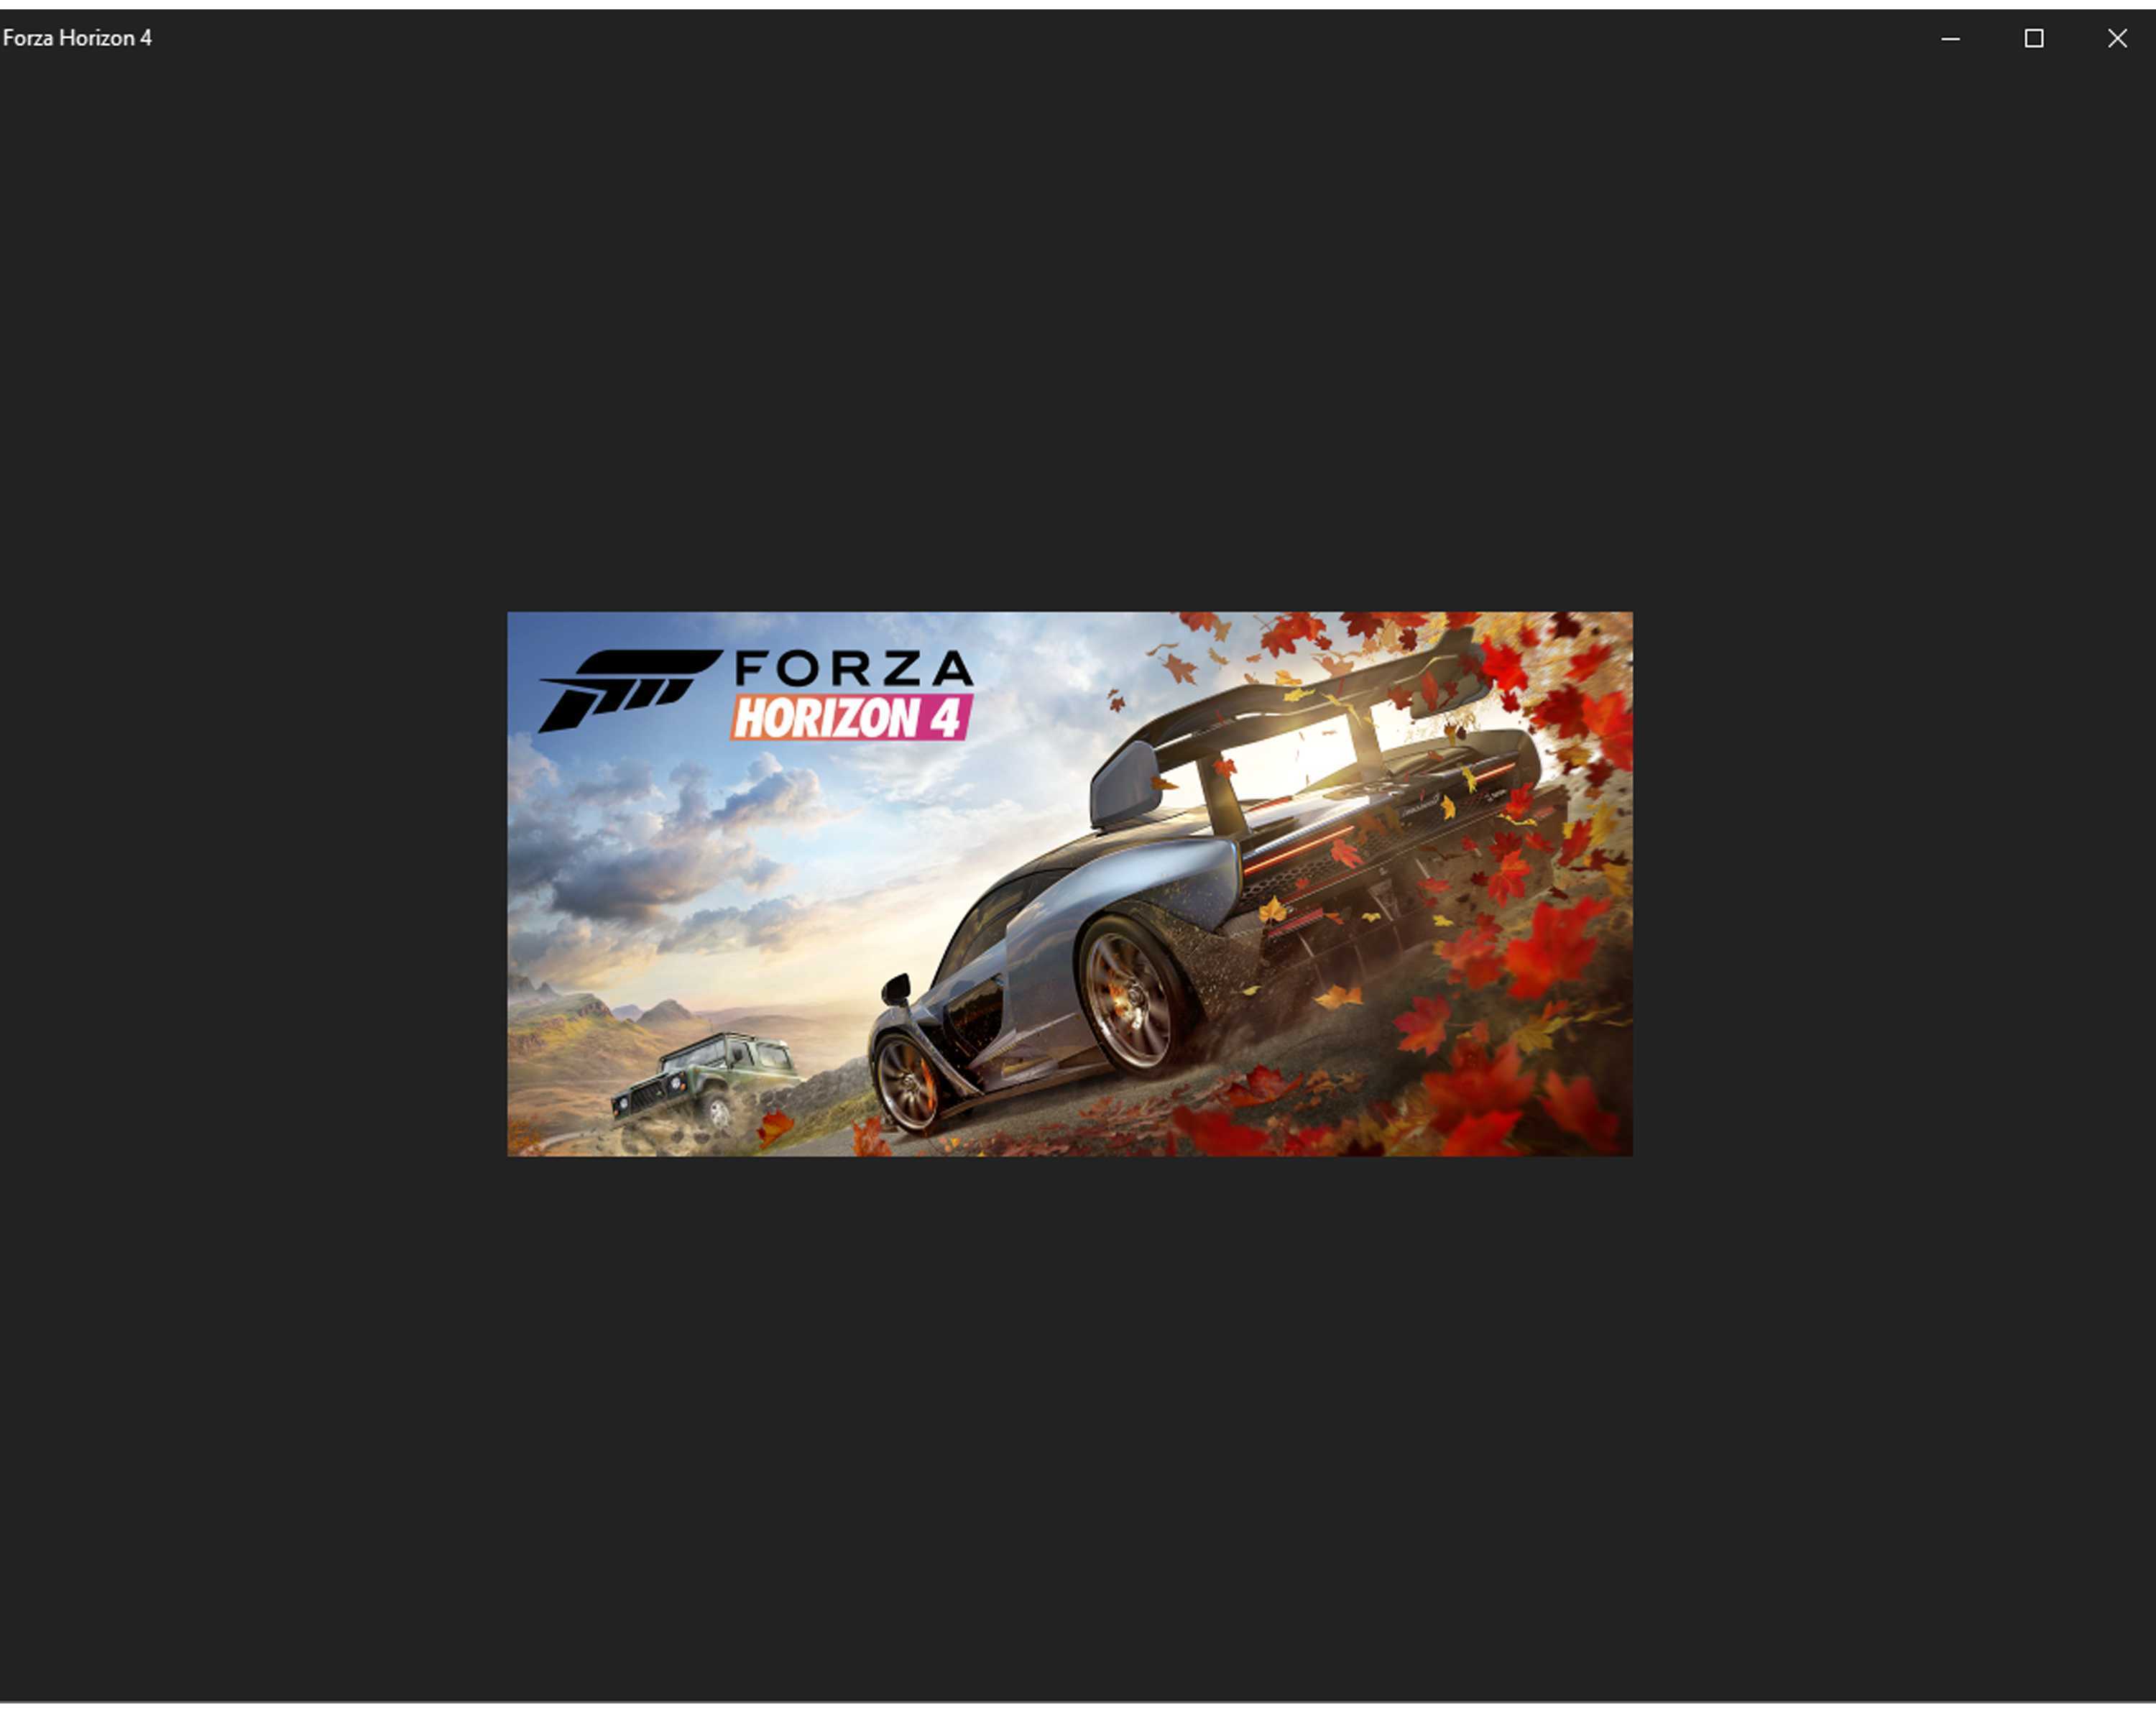 Форза хорайзен 4 вылетает. Загрузочный экран Форза хорайзен 5. Загрузка Forza Horizon 5. Форза 4 запускается. Вылетает Forza Horizon 4.